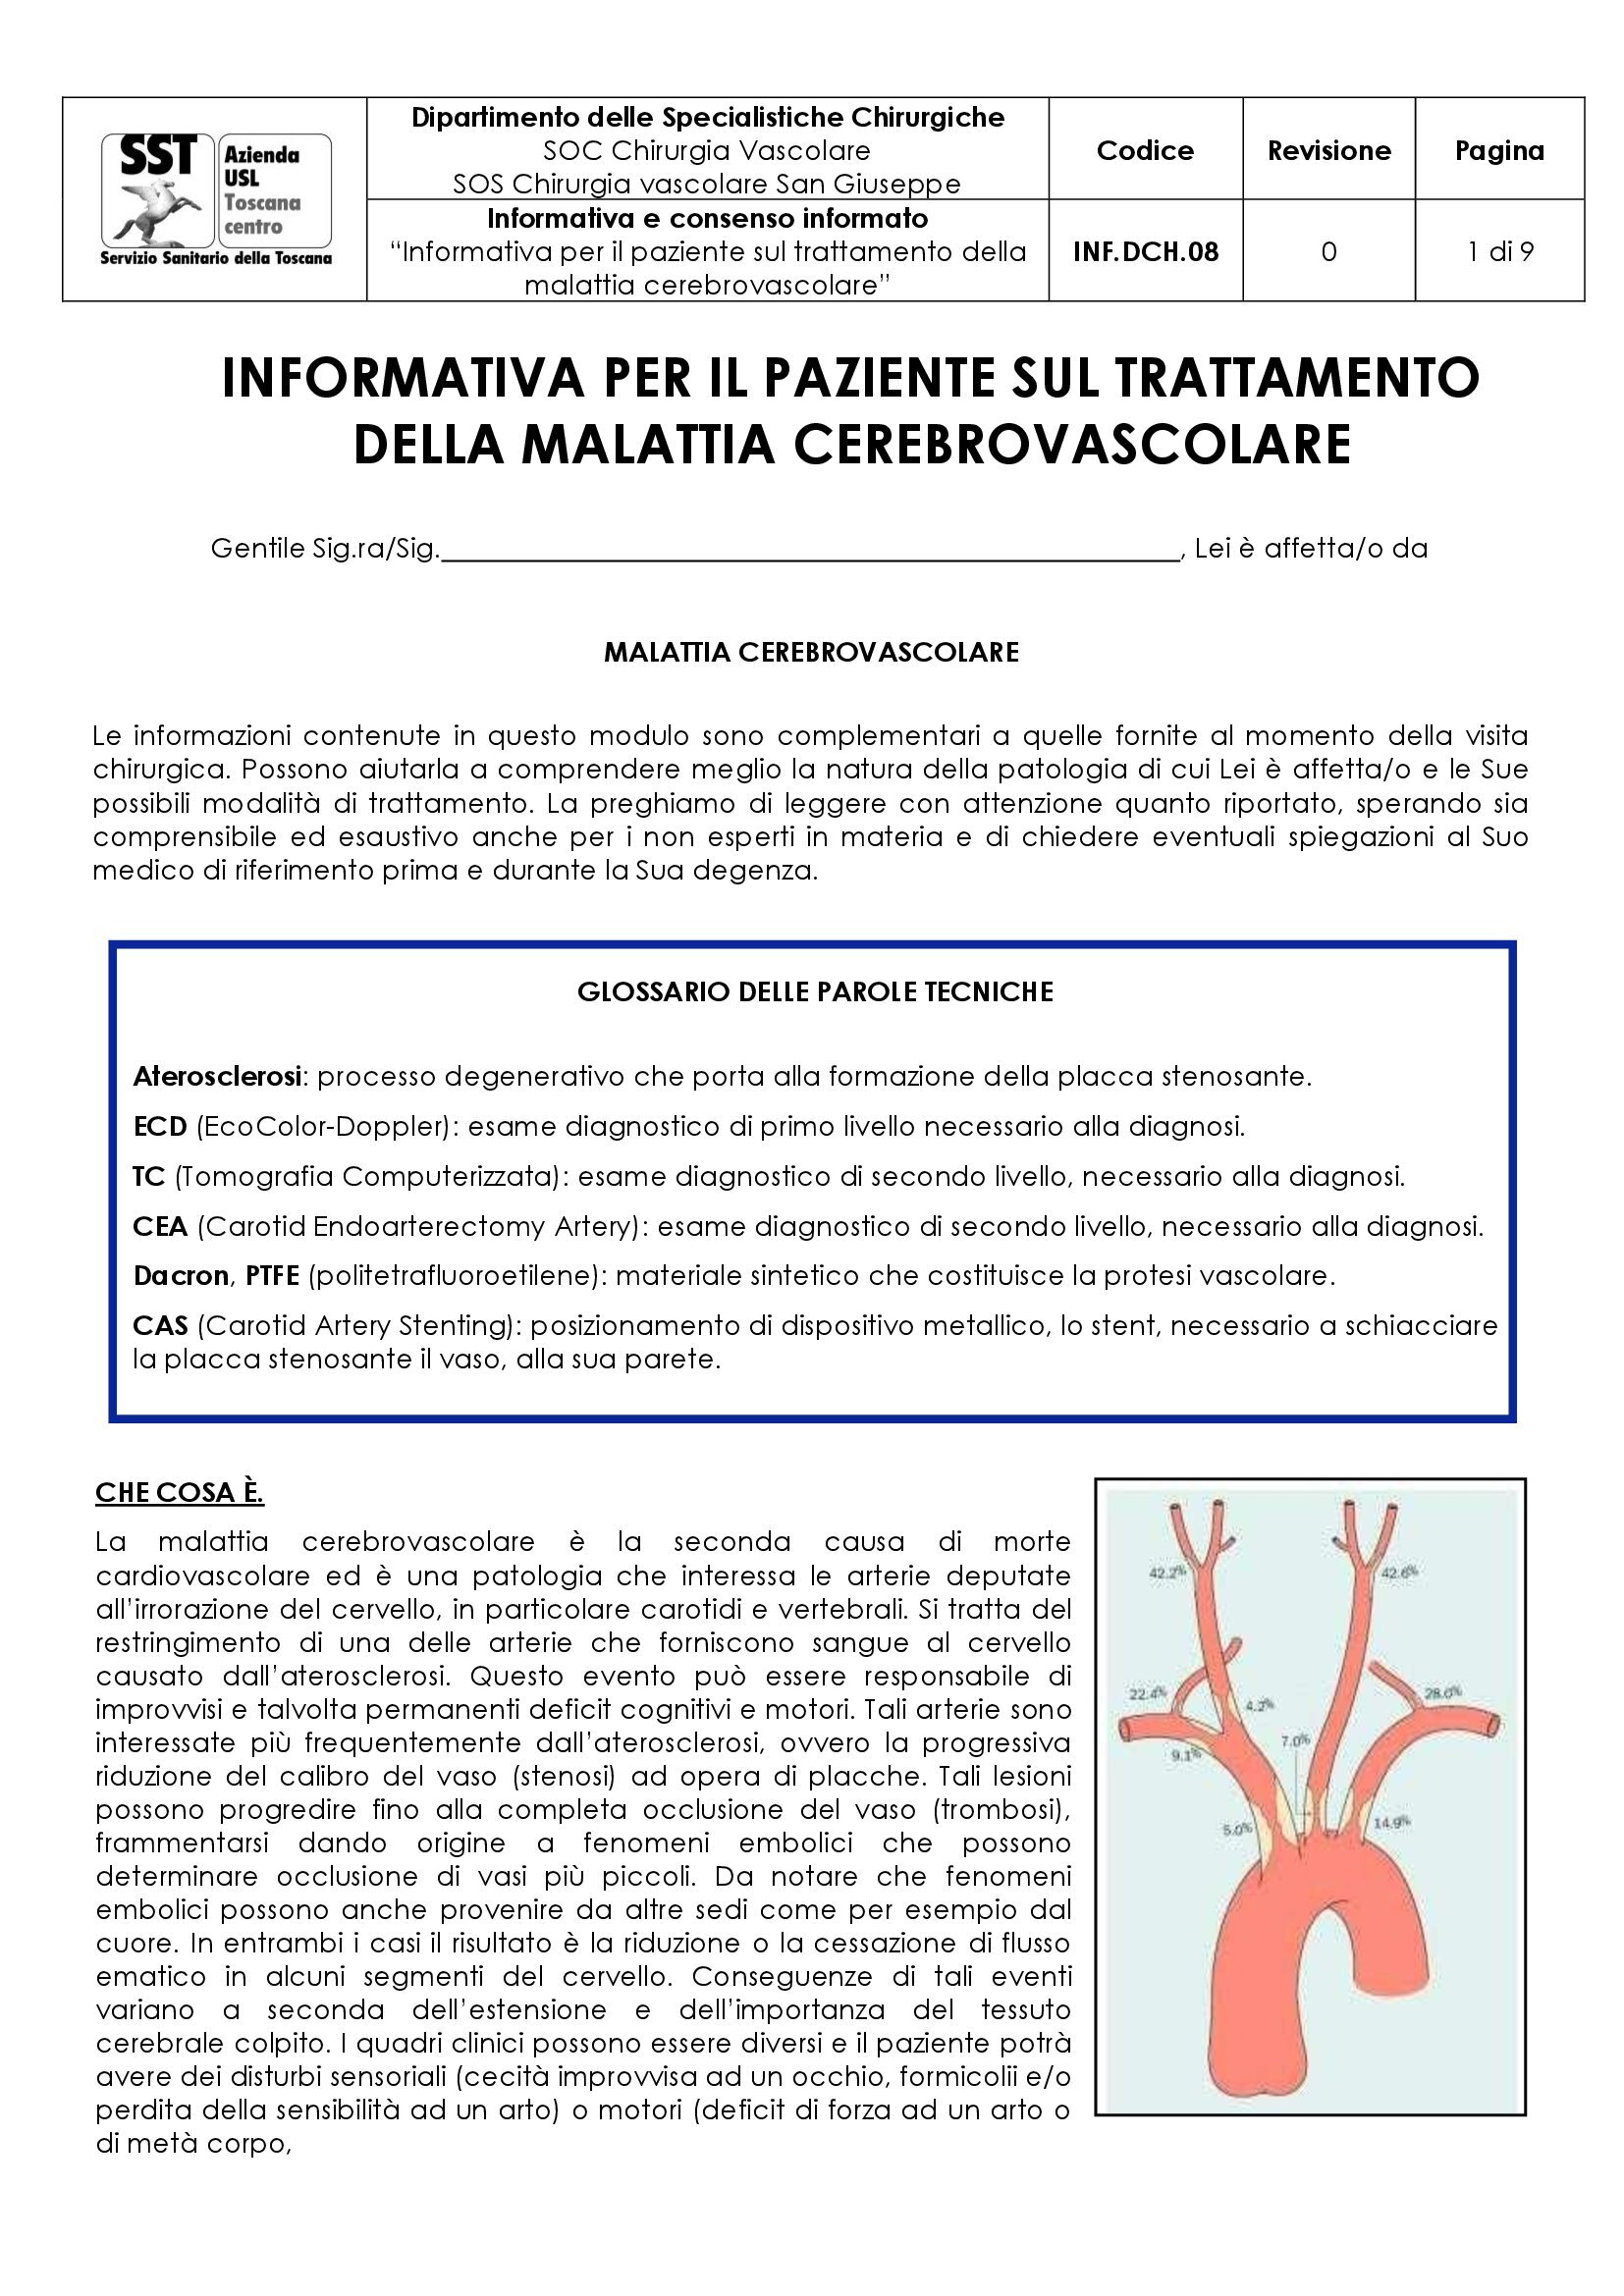 INF.DCH.08 “Informativa per il paziente sul trattamento della malattia cerebrovascolare”